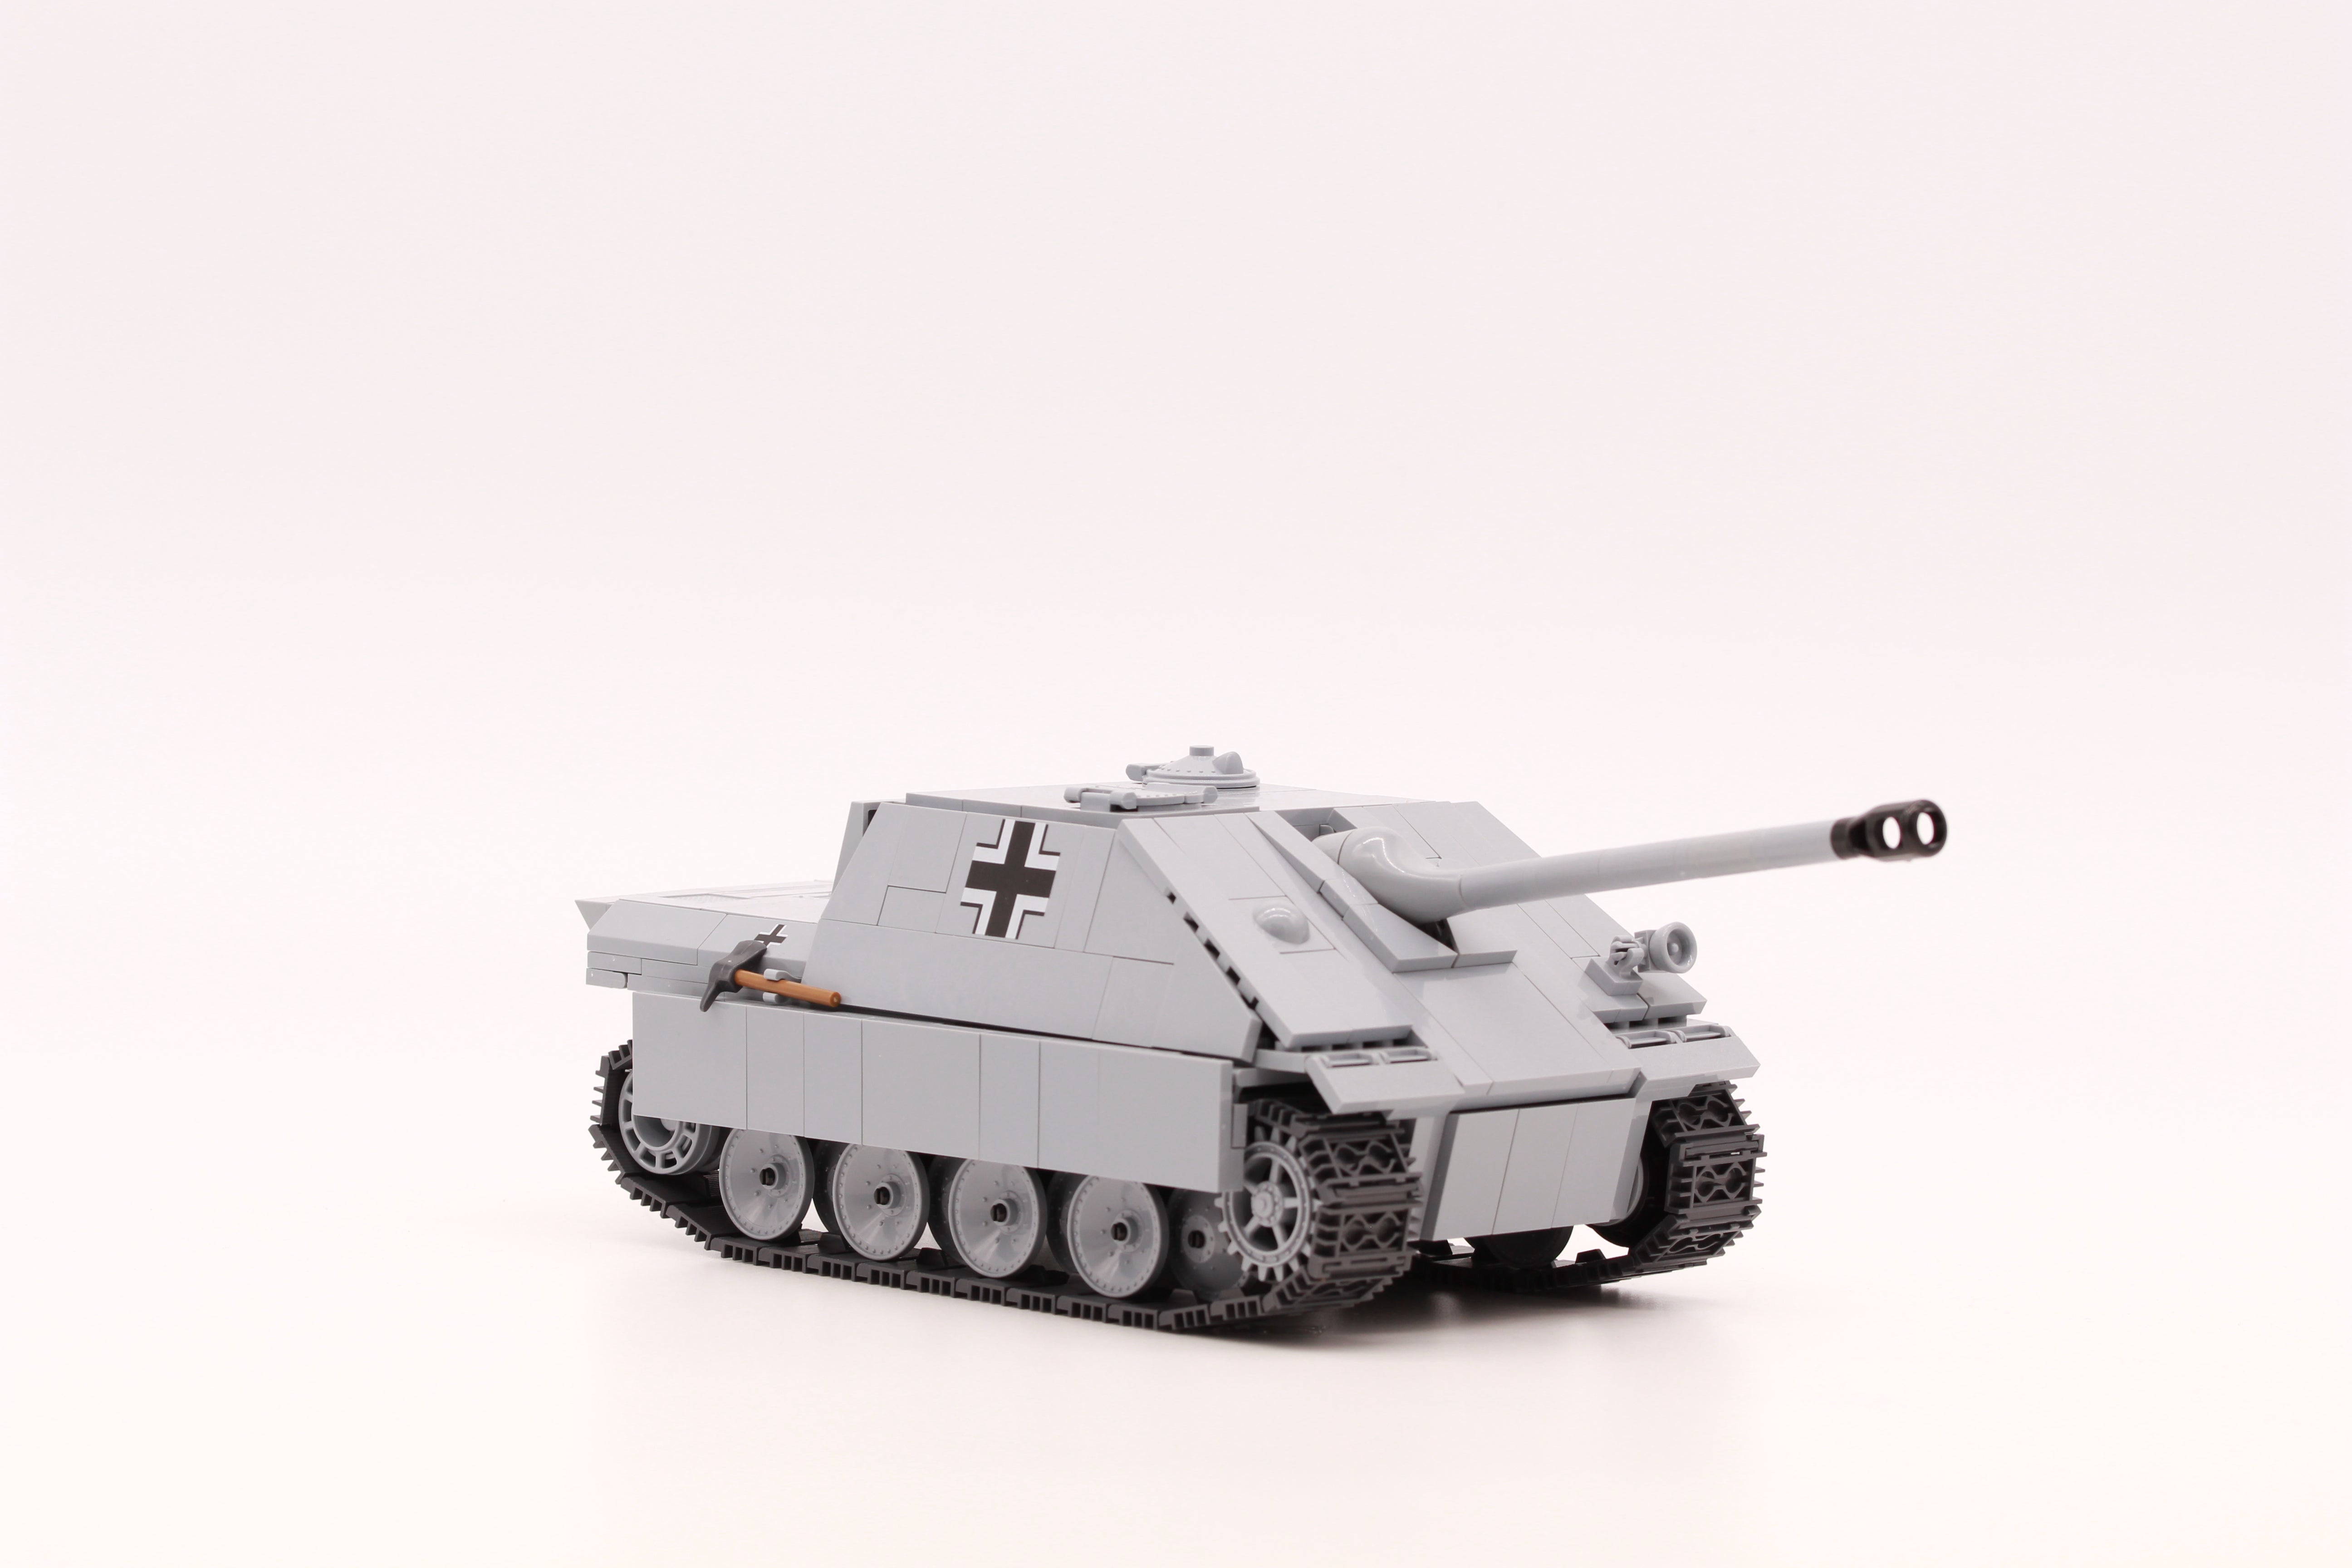 Sd.Kfz.173 Jagdpanther